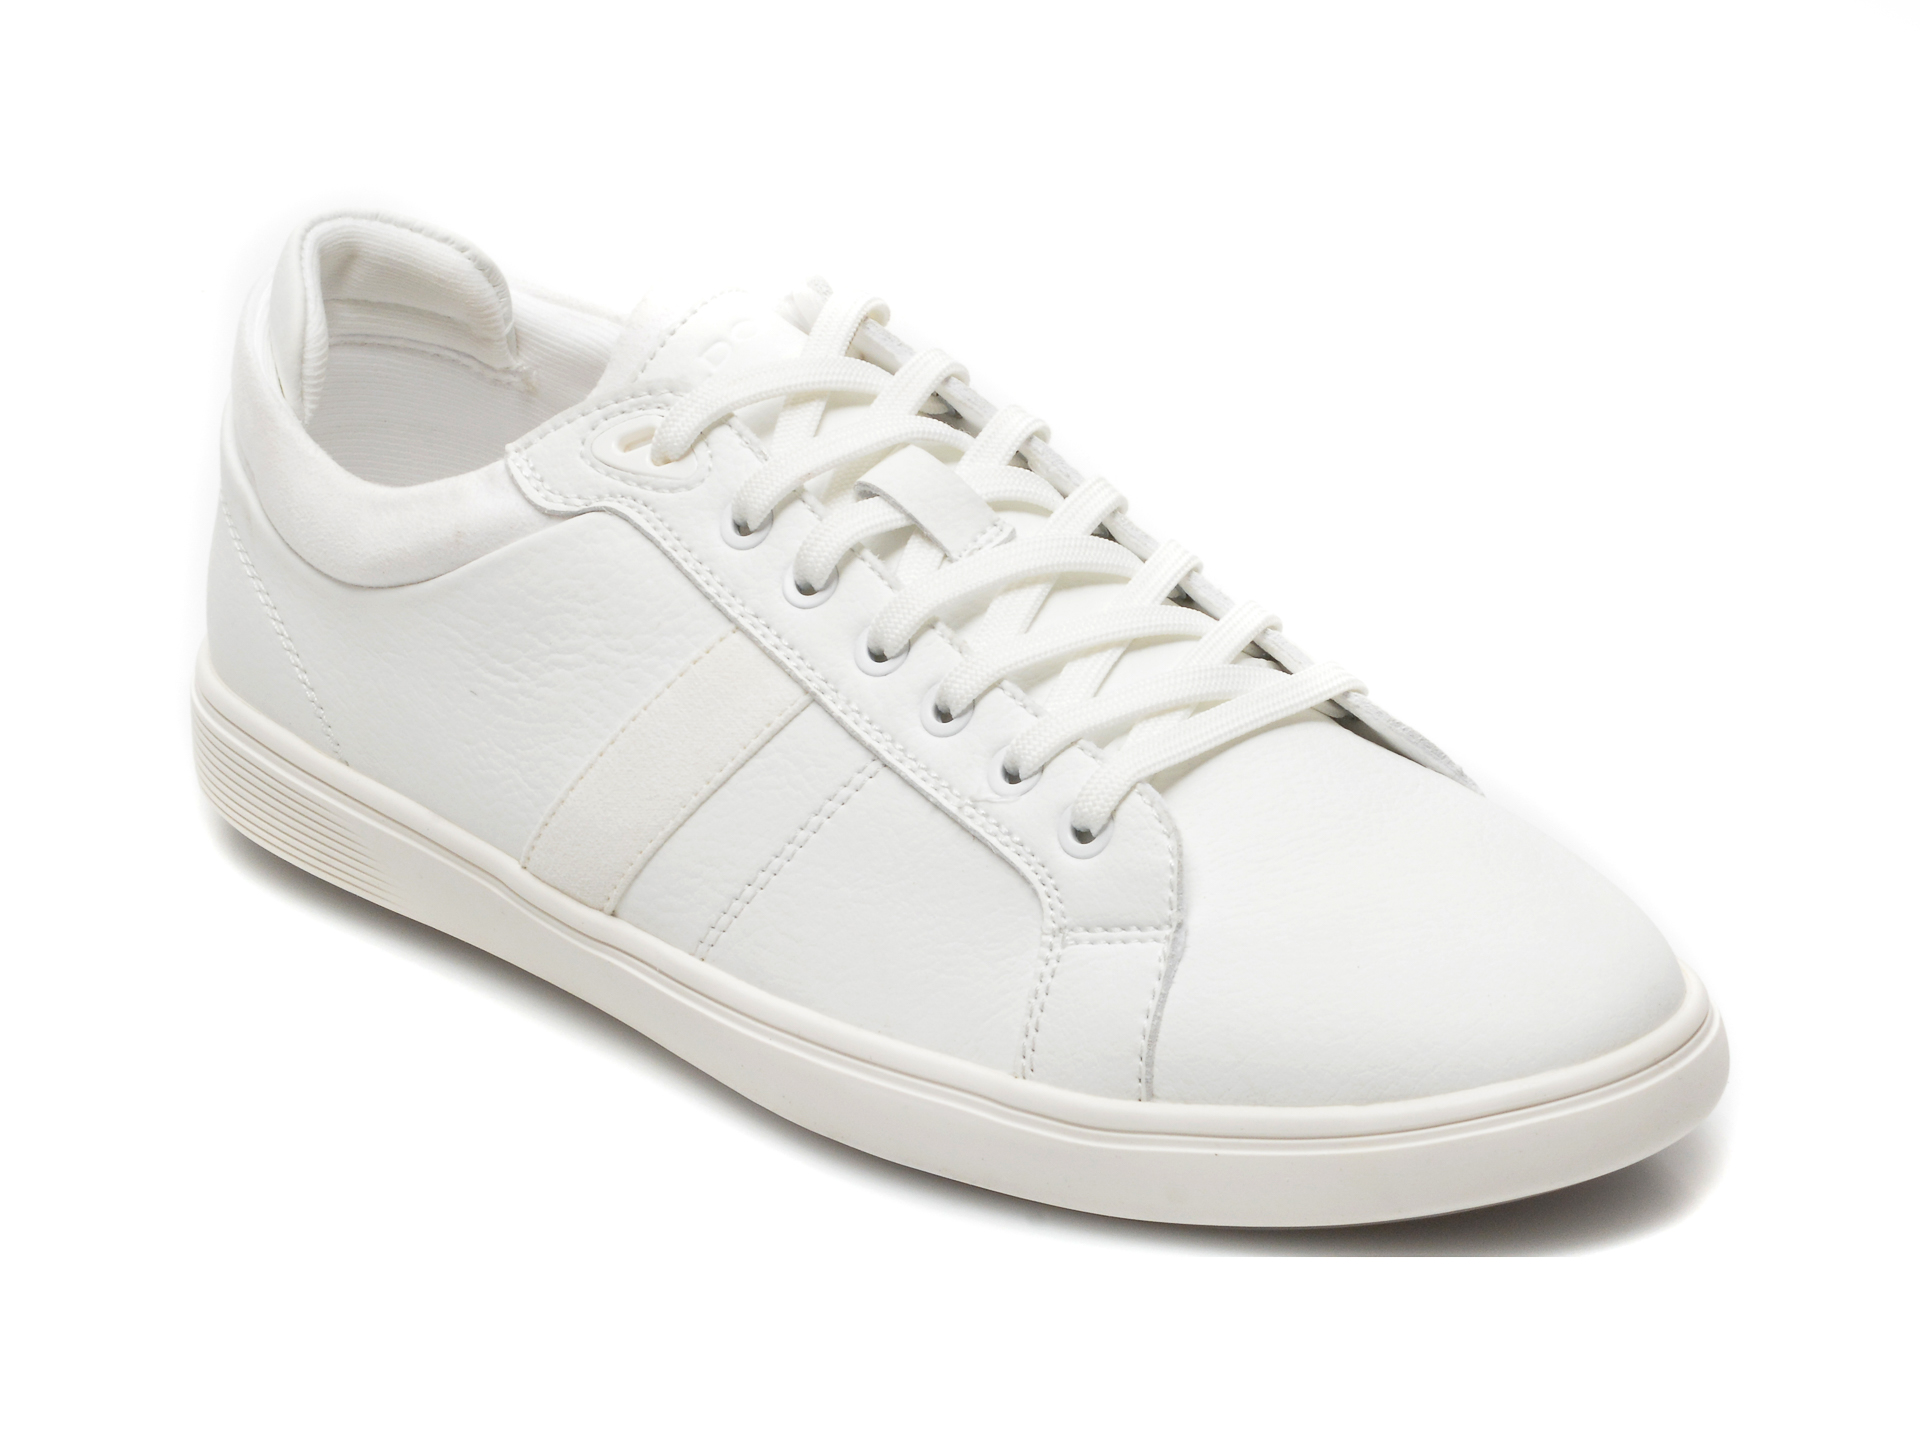 Pantofi sport ALDO albi, KOISENN100, din piele ecologica Aldo Aldo